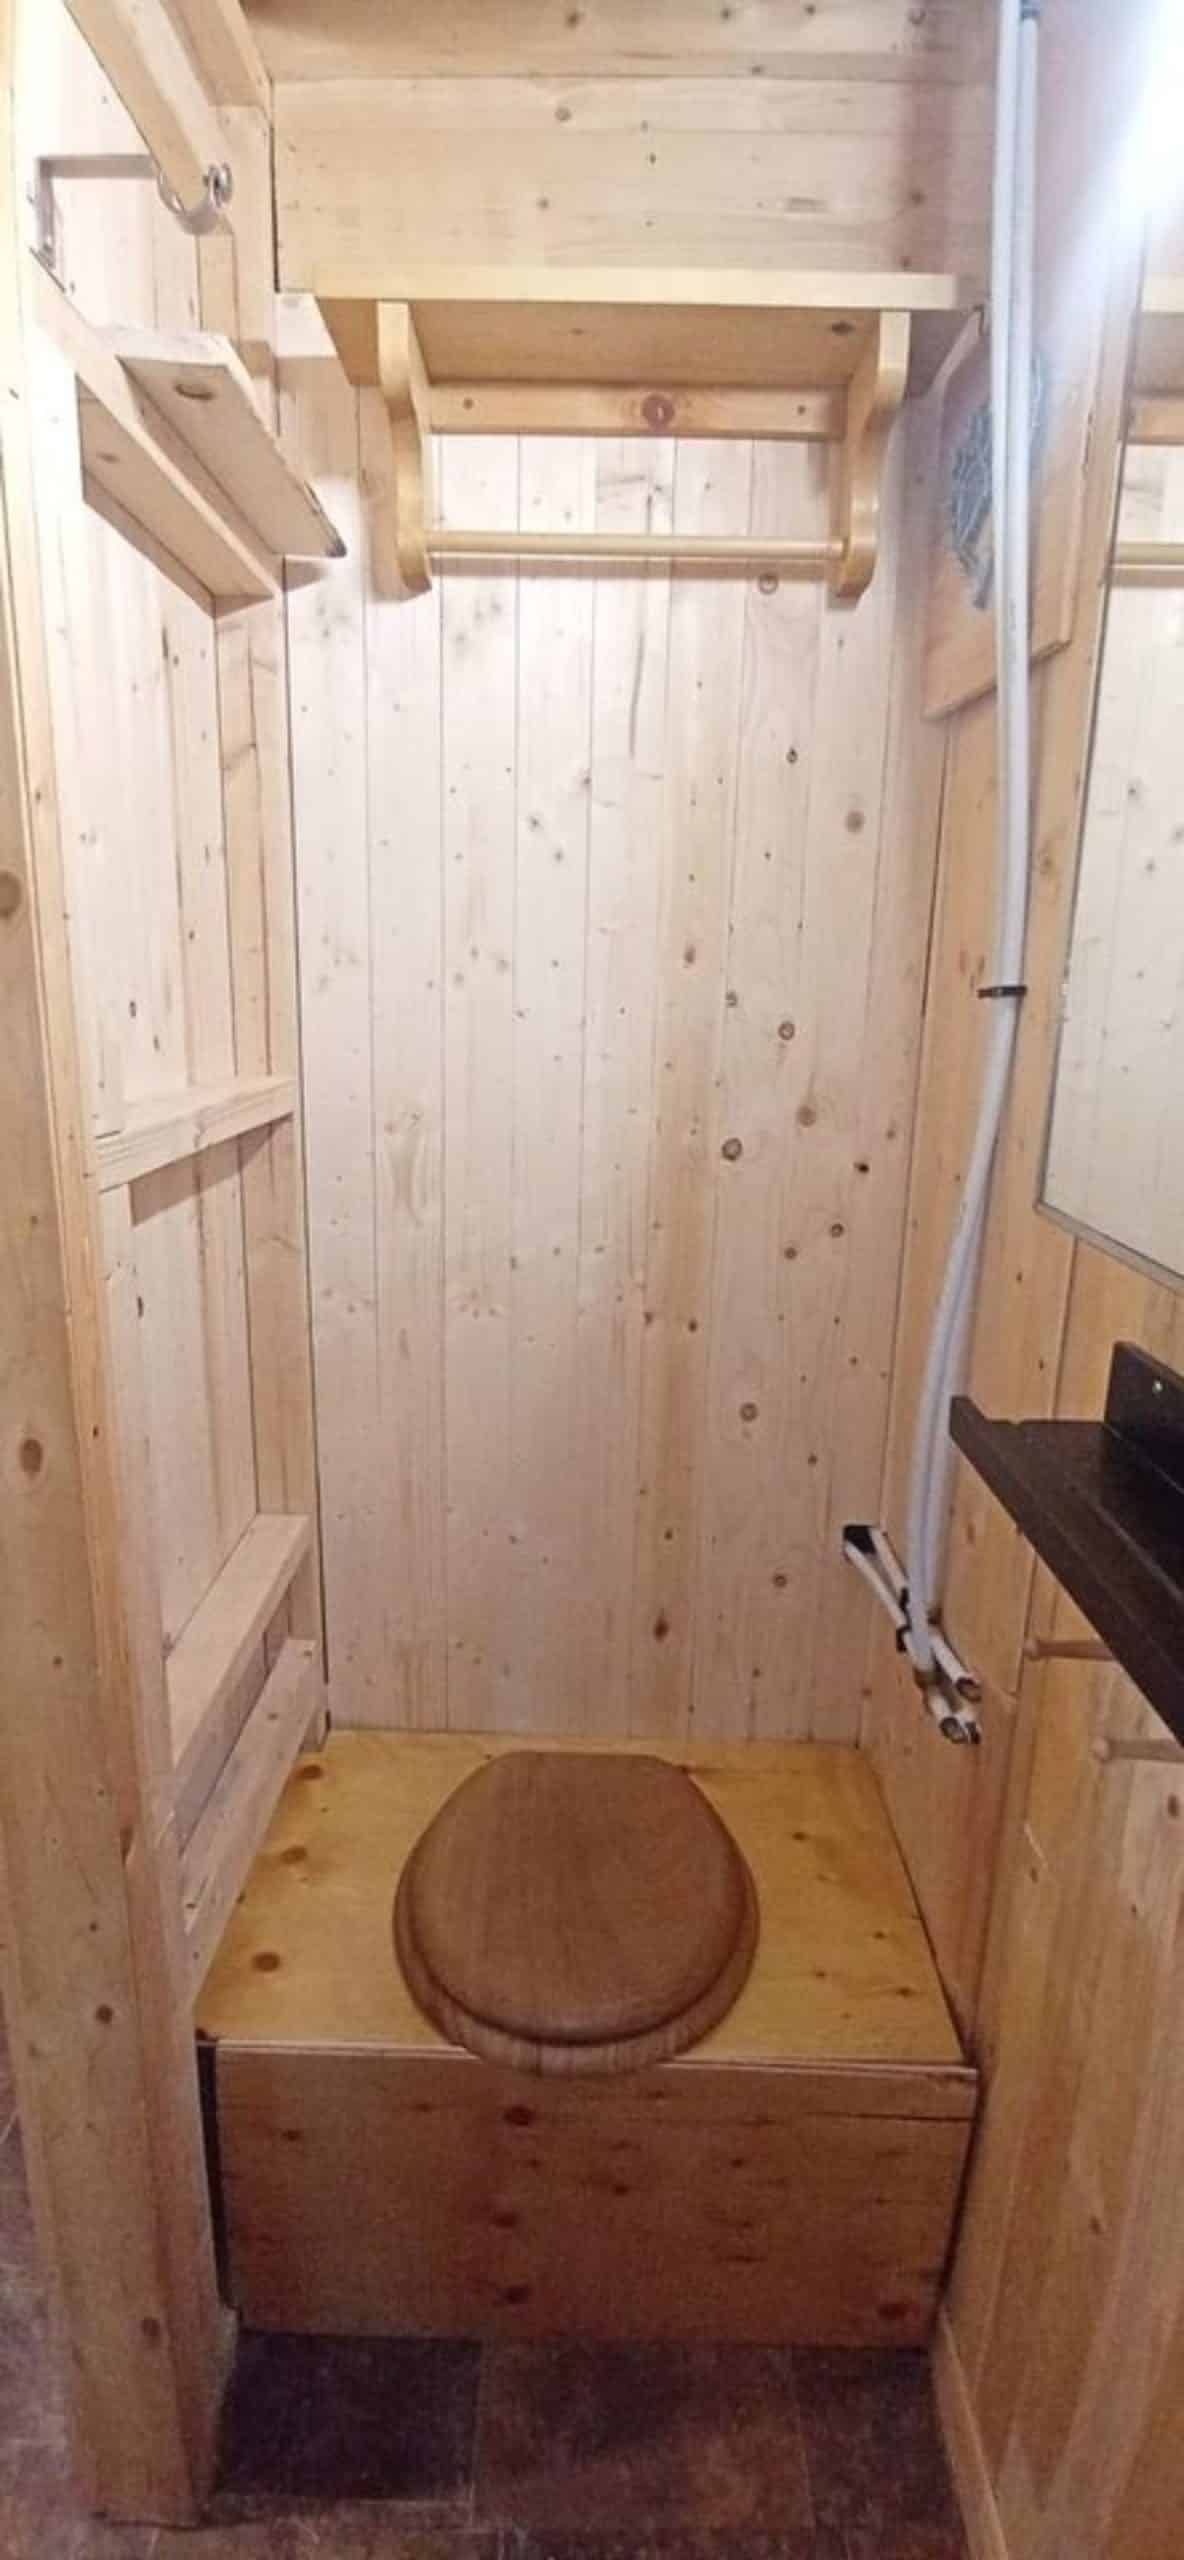 wooden standard toilet in the bathroom